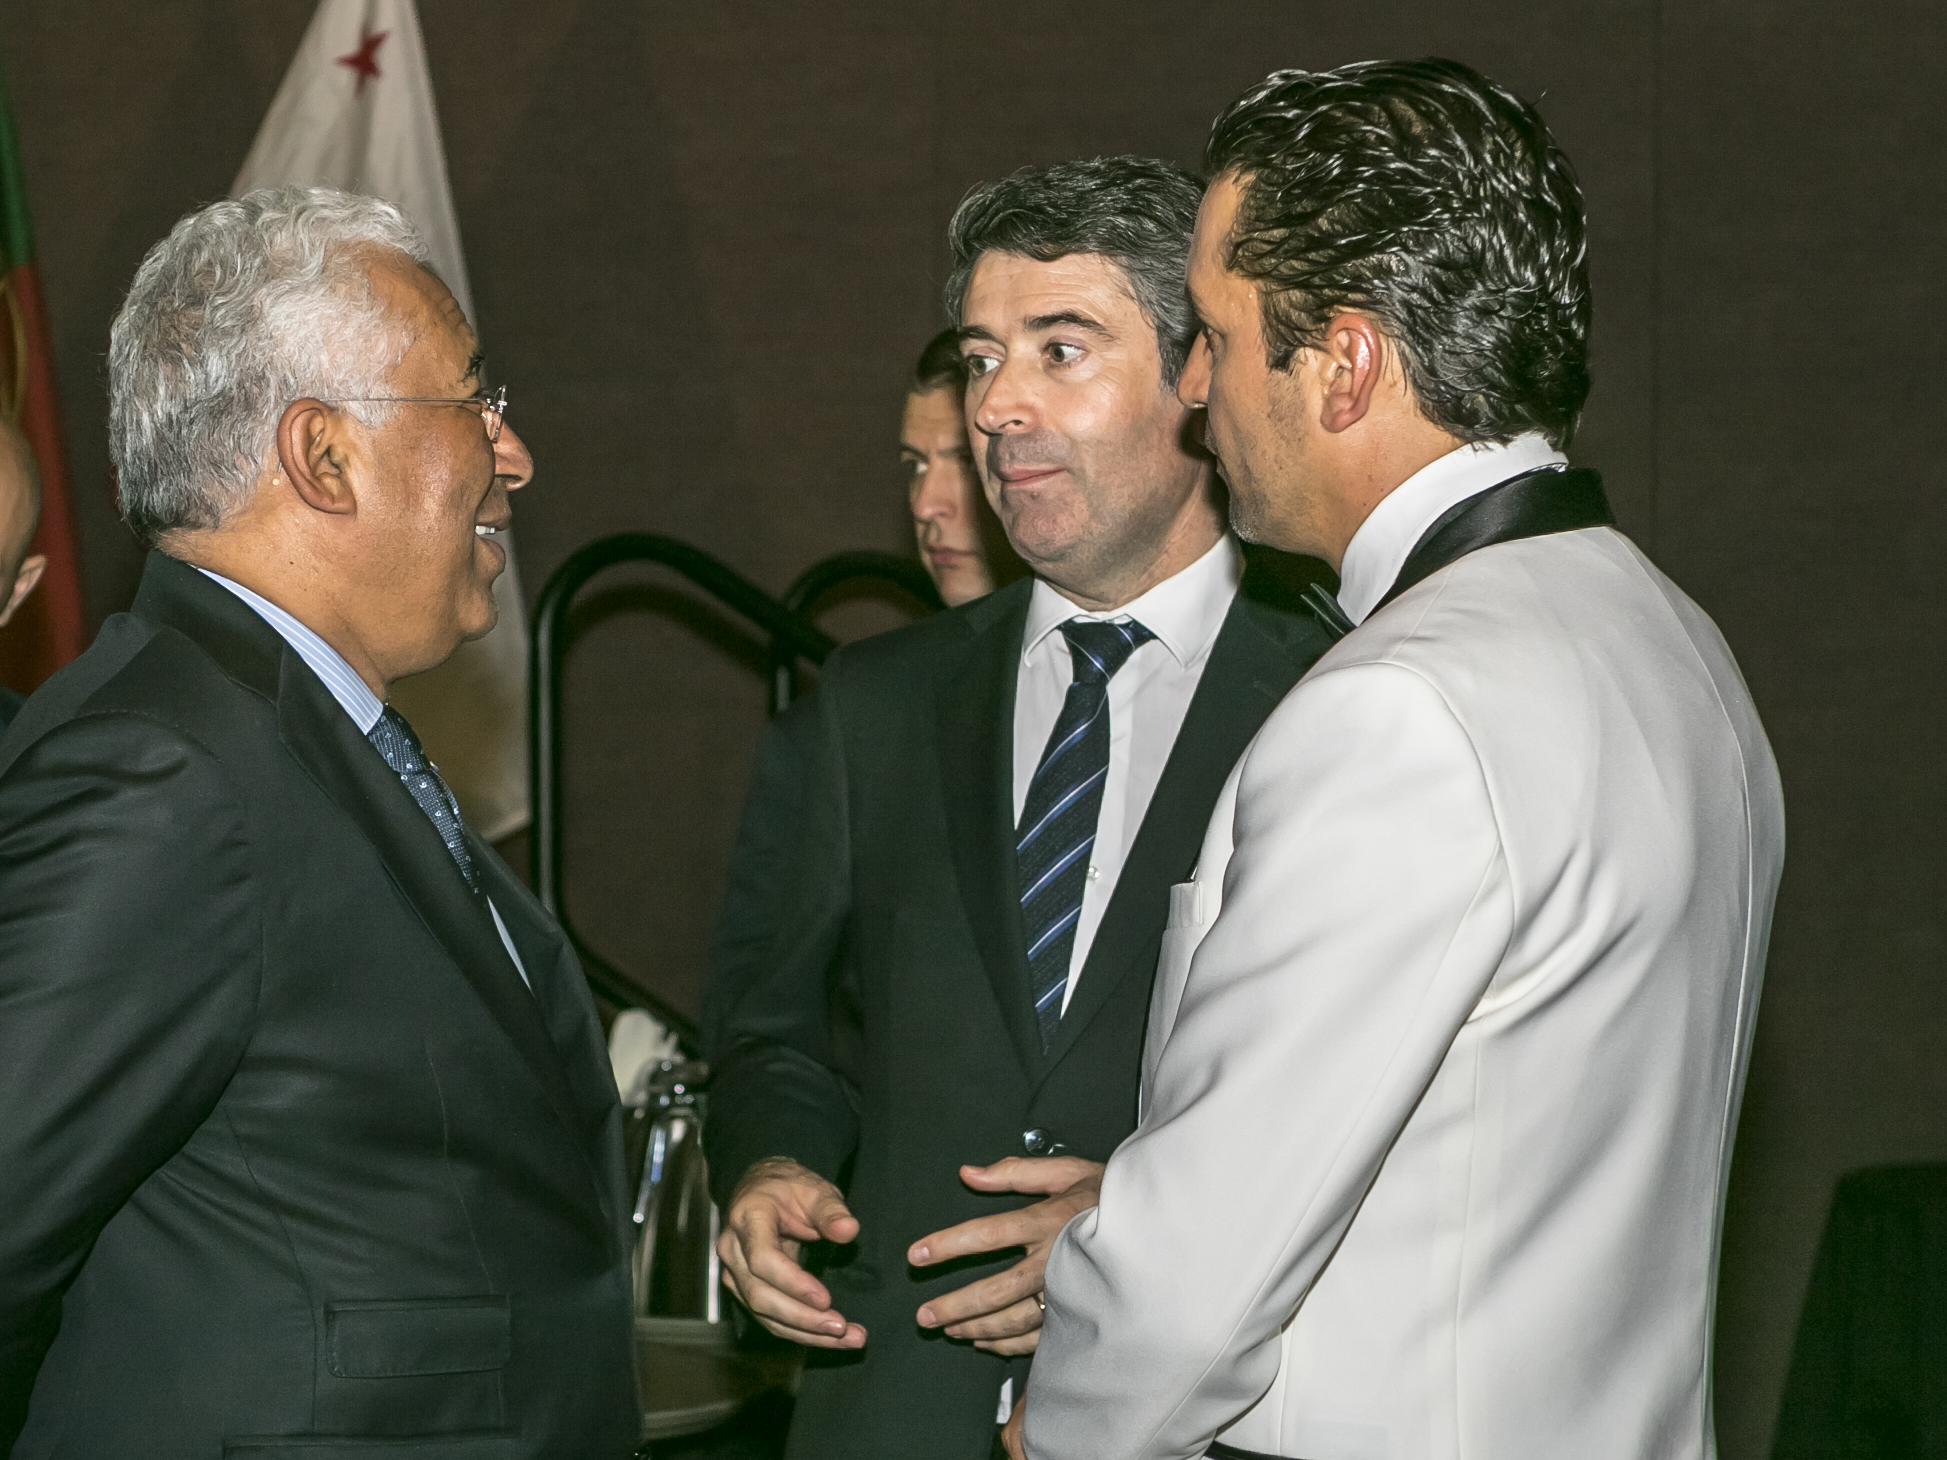 Event_2018 Portuguese Prime Minister Reception365